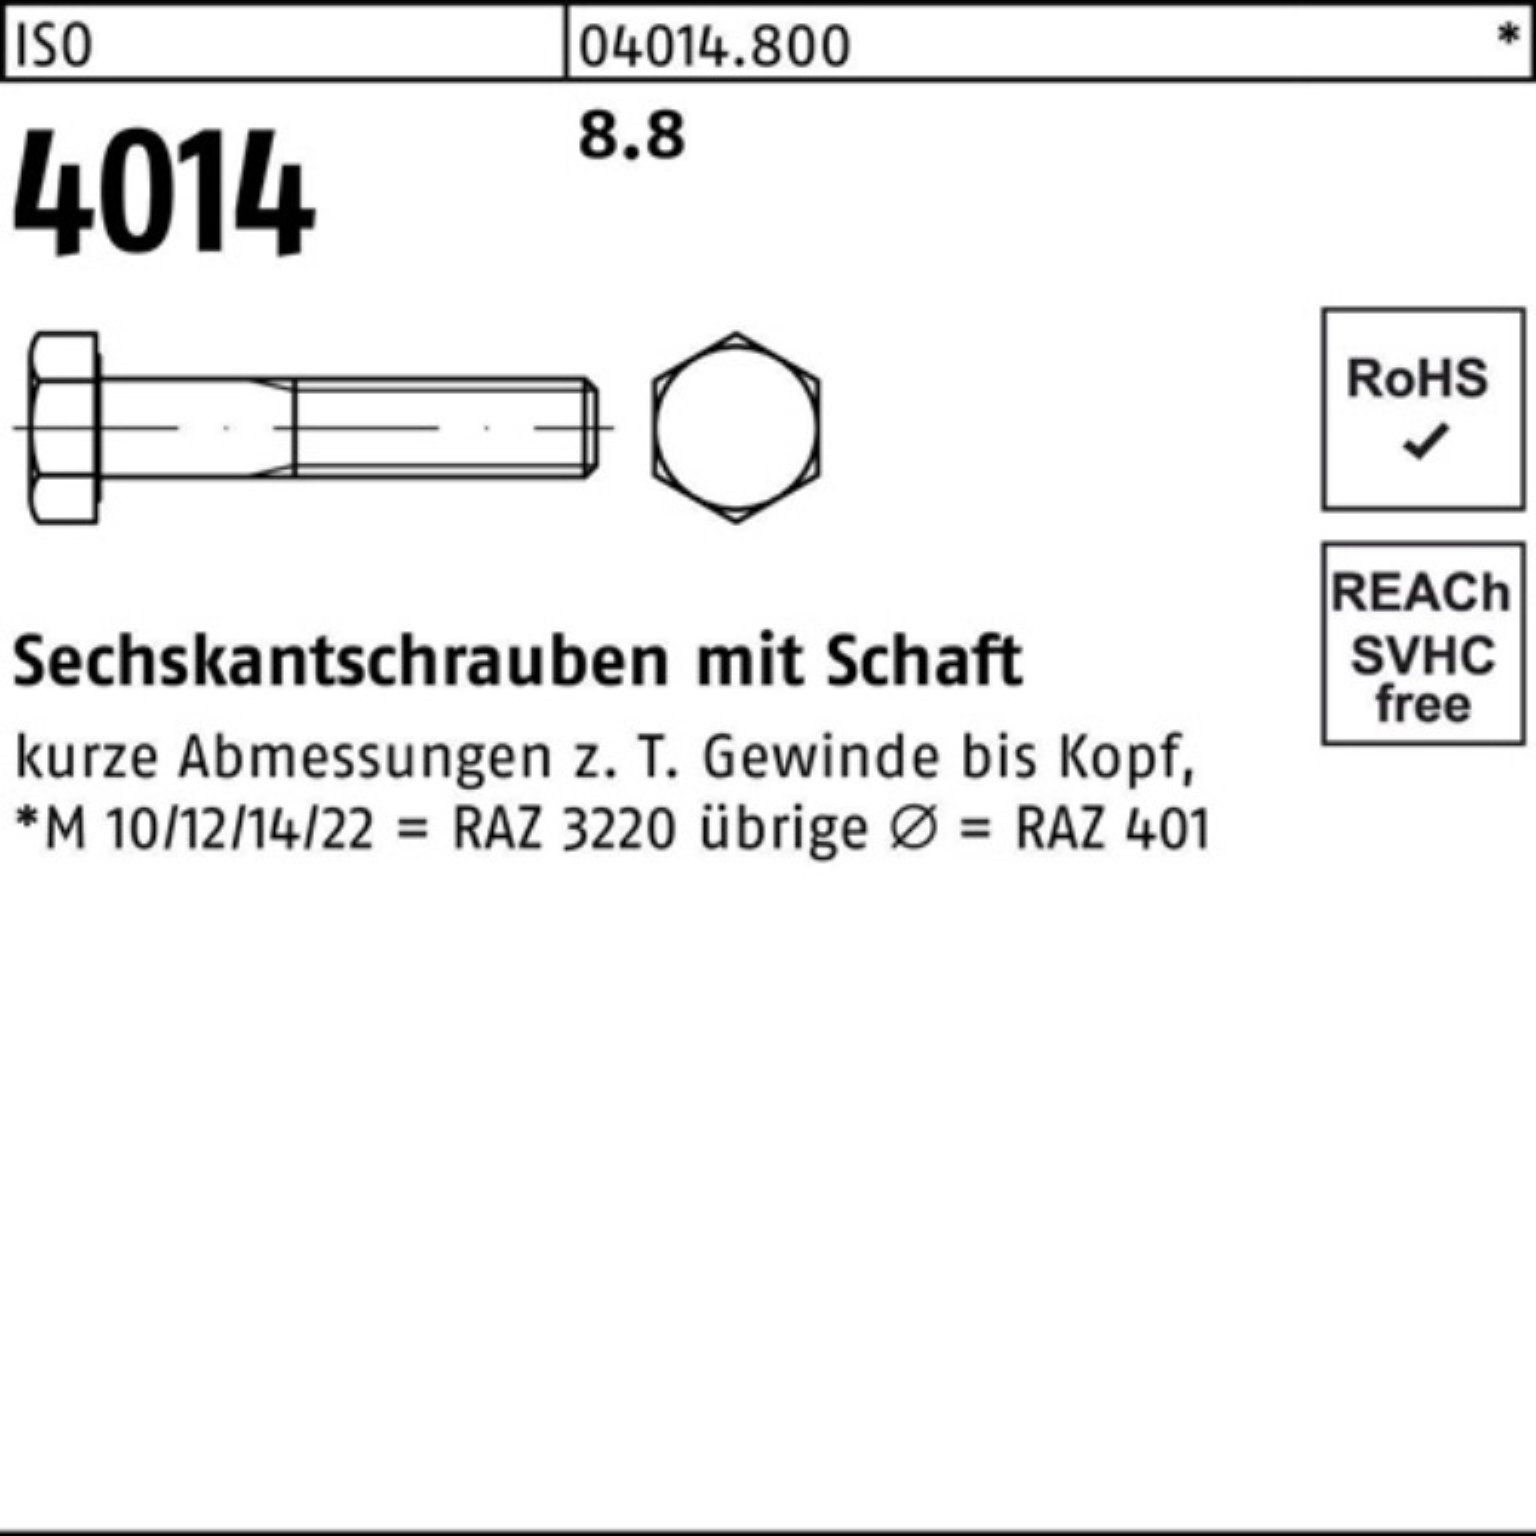 Bufab Sechskantschraube 100er ISO Pack Sechskantschraube M14x 4014 Schaft ISO 50 8.8 55 Stück